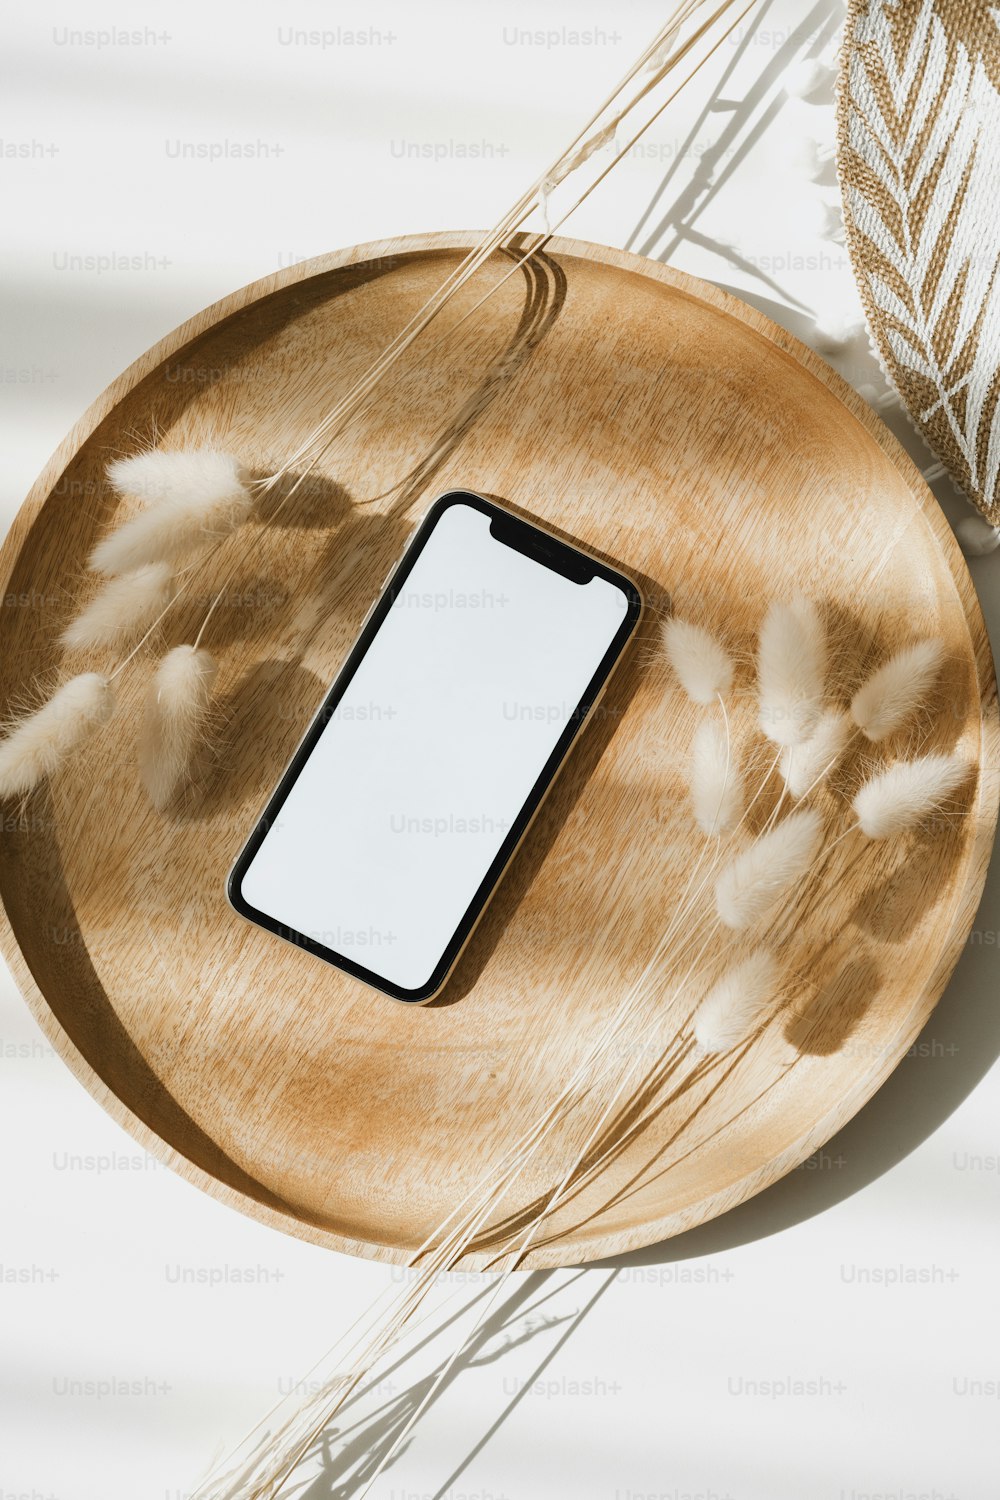 Un teléfono celular sentado encima de un plato de madera